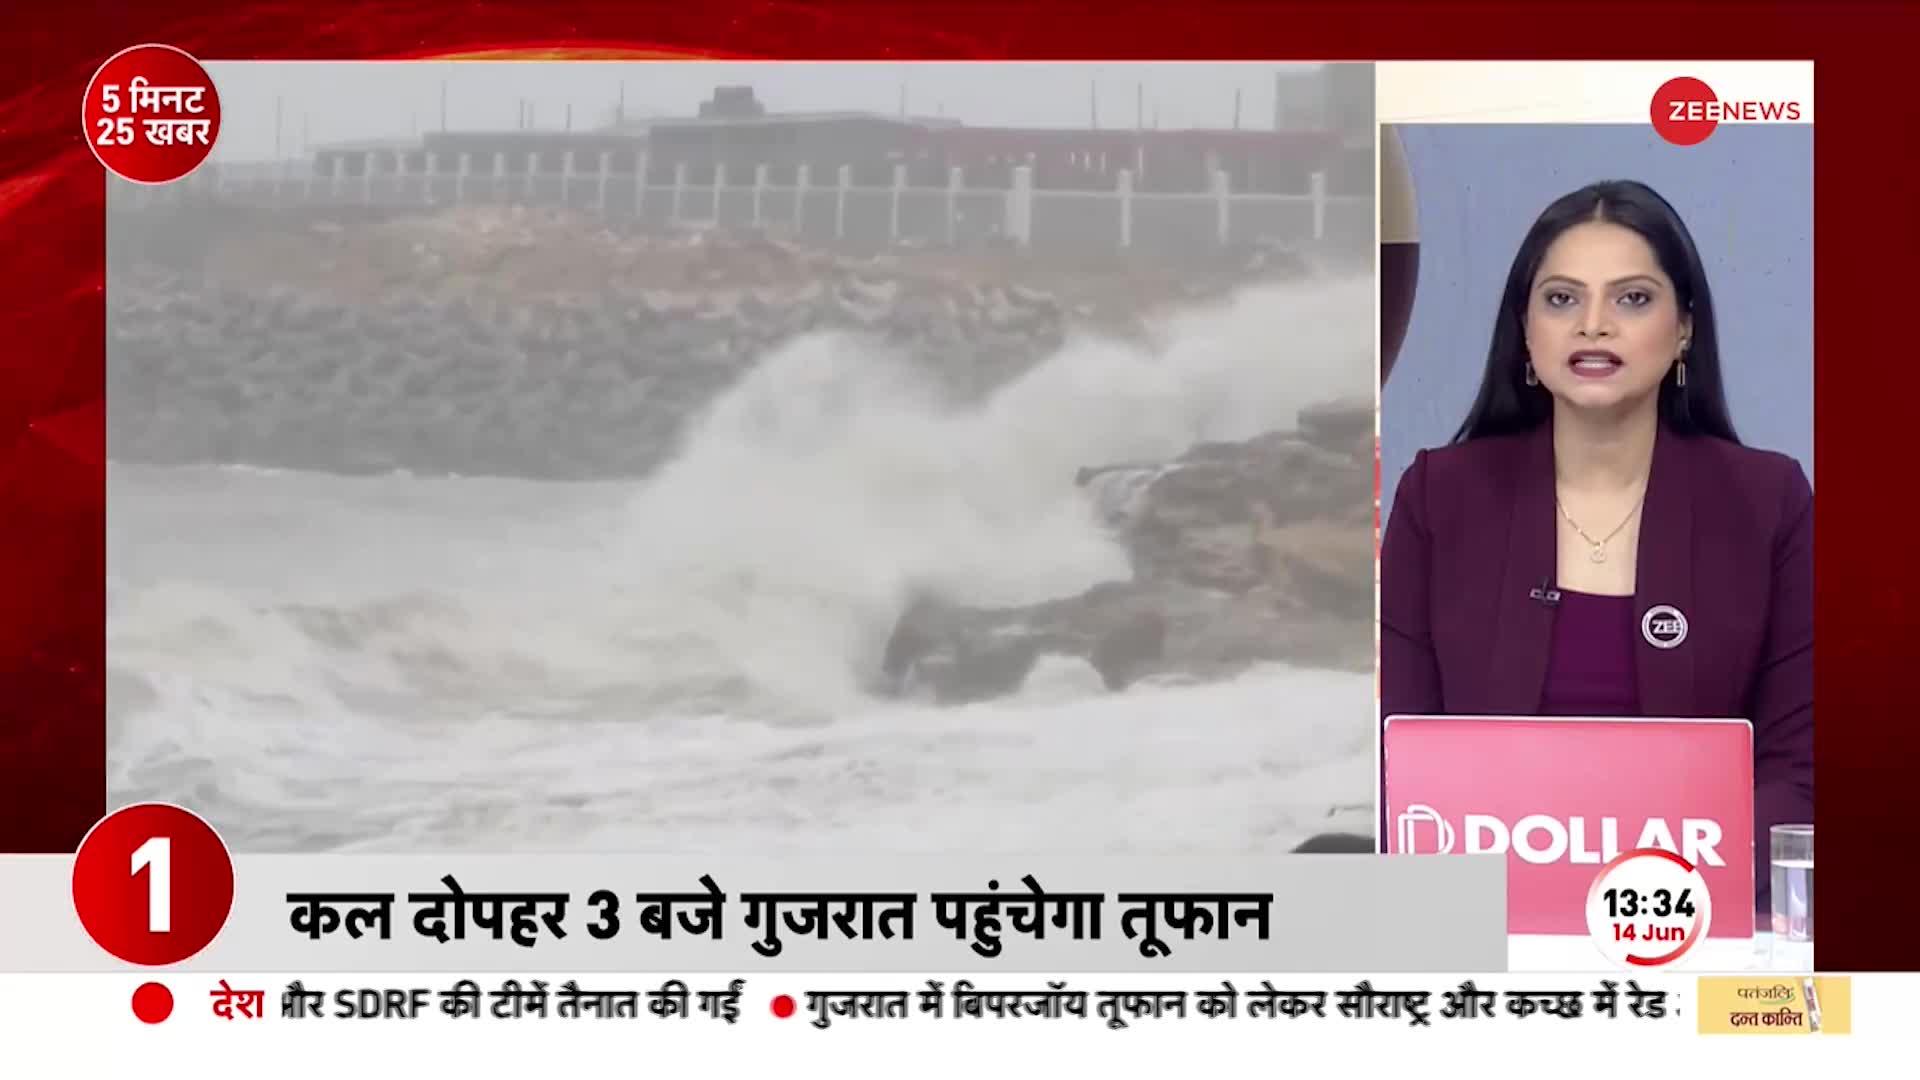 Cyclone Biparjoy Update: बिपरजॉय बना 'काल', पाकिस्तान की ओर मुड़ता दिखा तूफान  | Pakistan